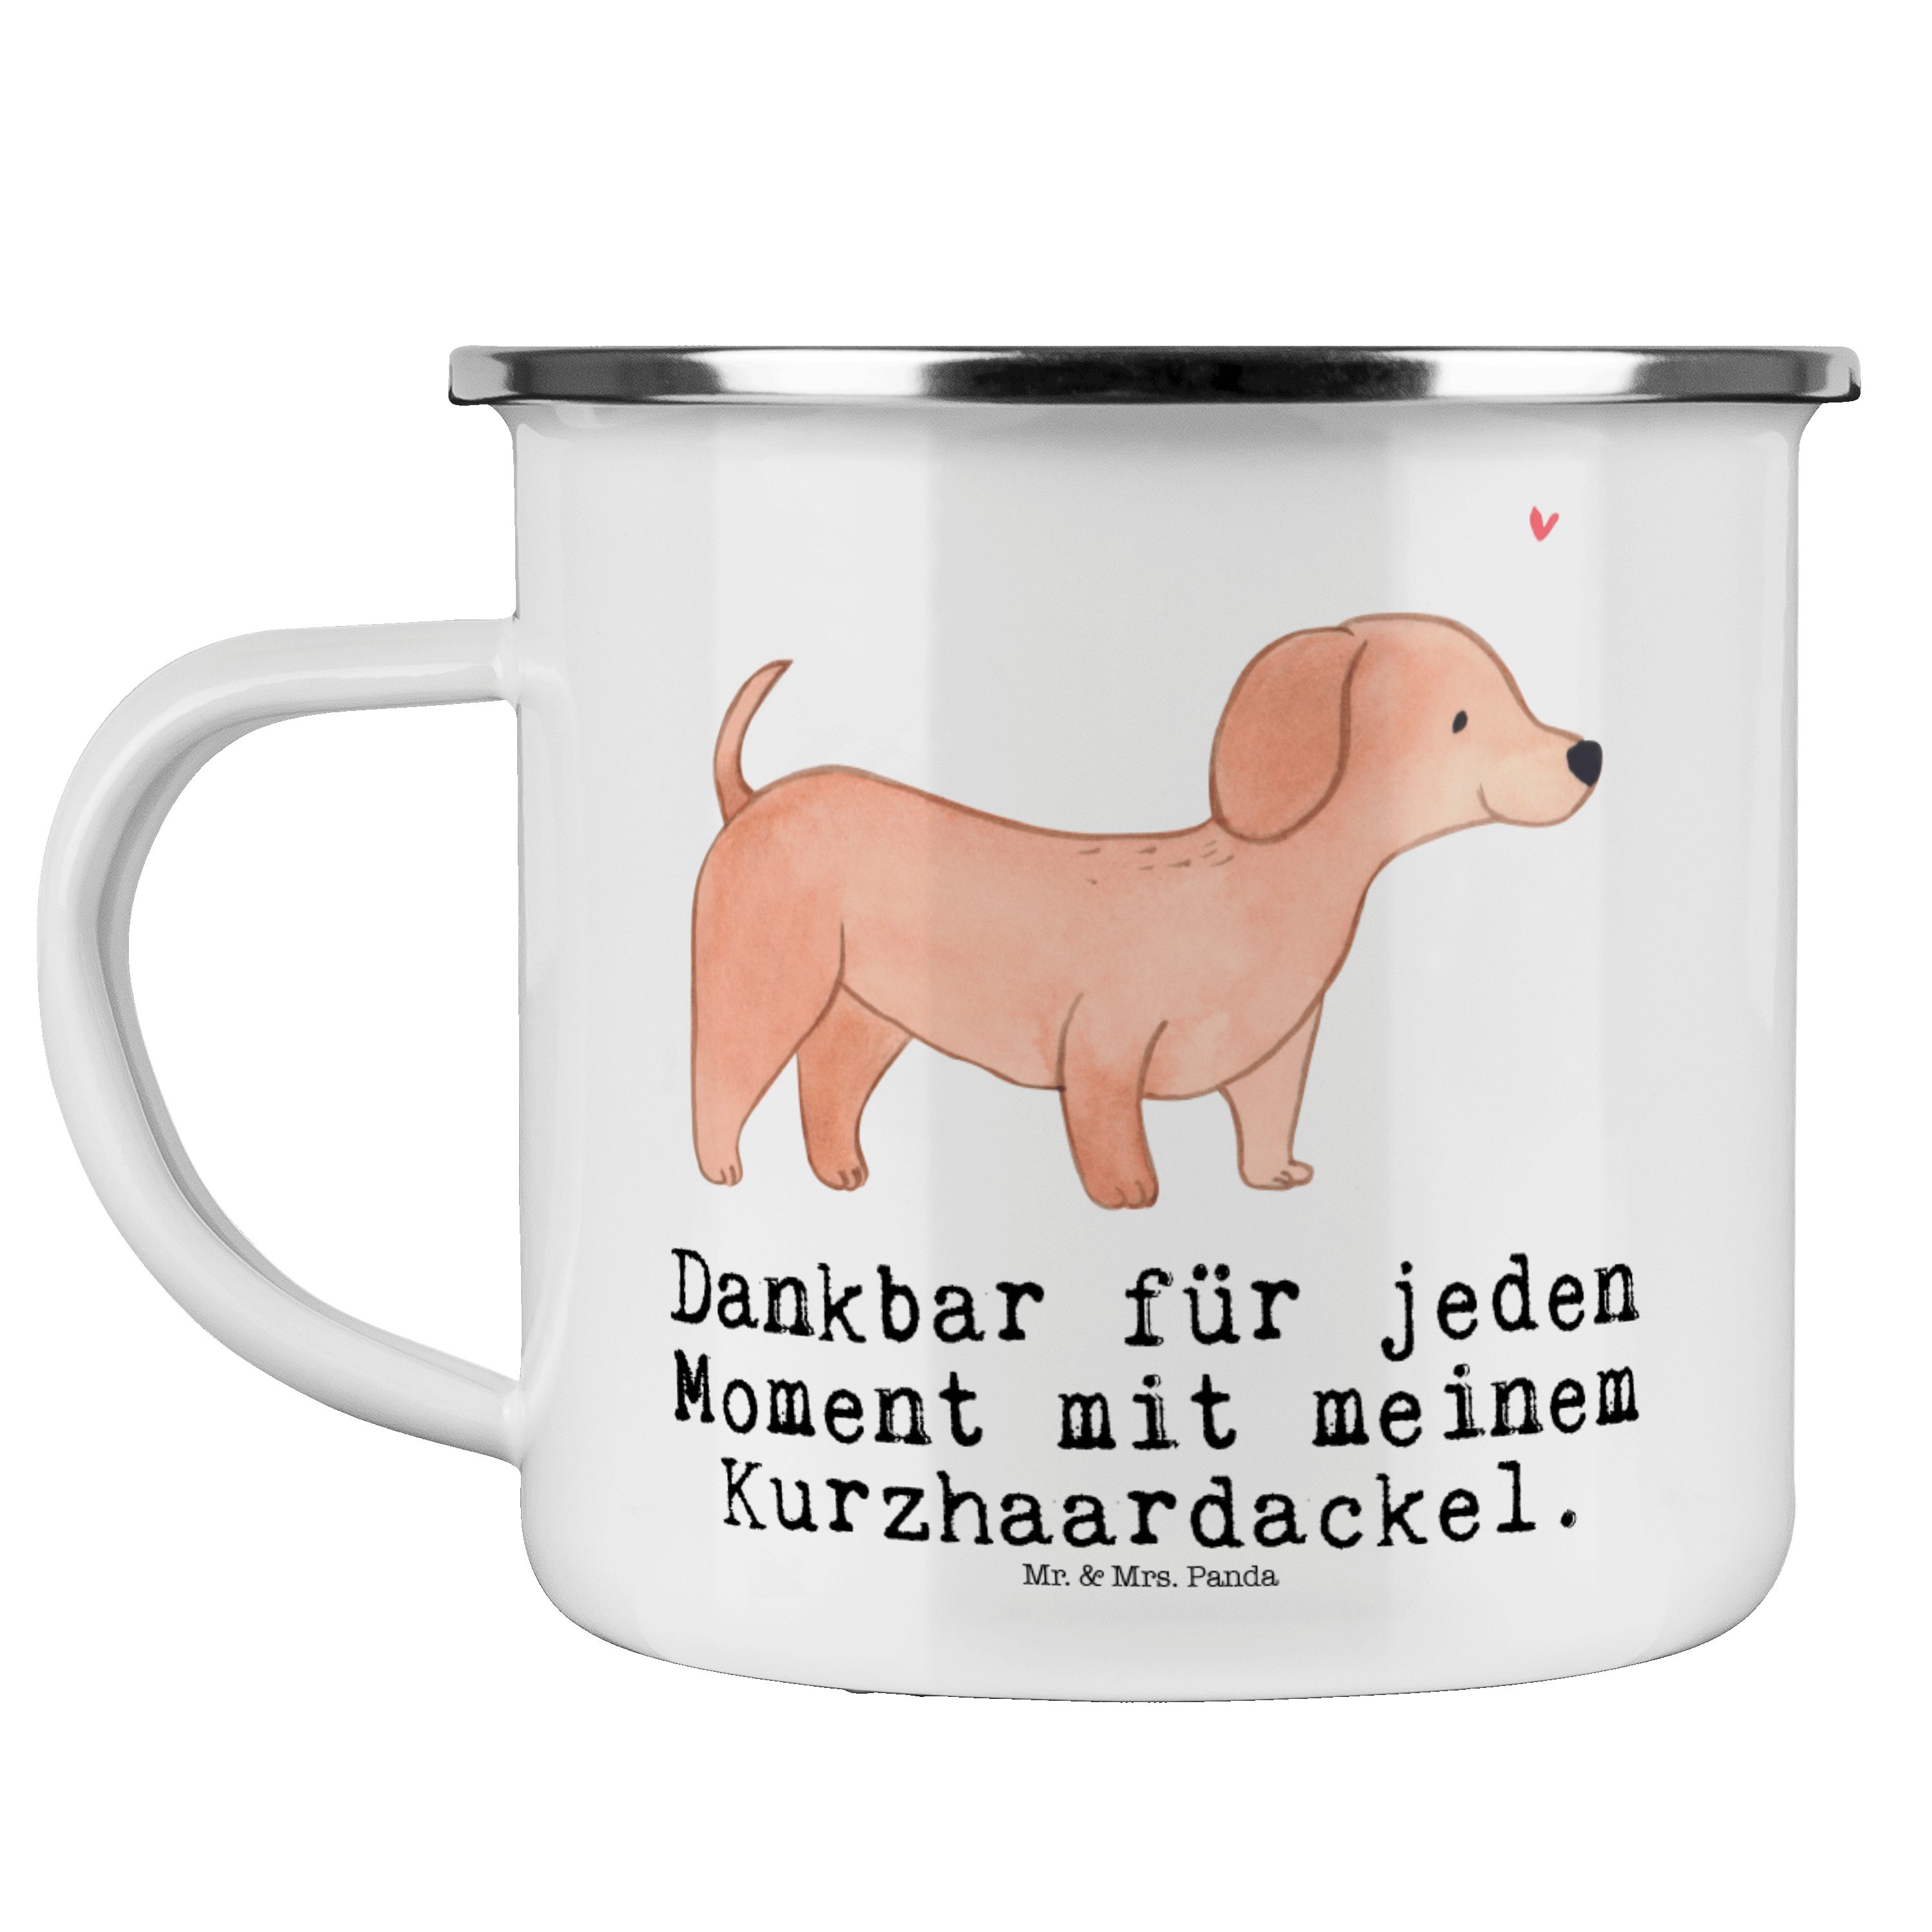 Mr. & Mrs. Panda Becher Dackel Kurzhaardackel Moment - Weiß - Geschenk, Kaffee Blechtasse, Ou, Emaille